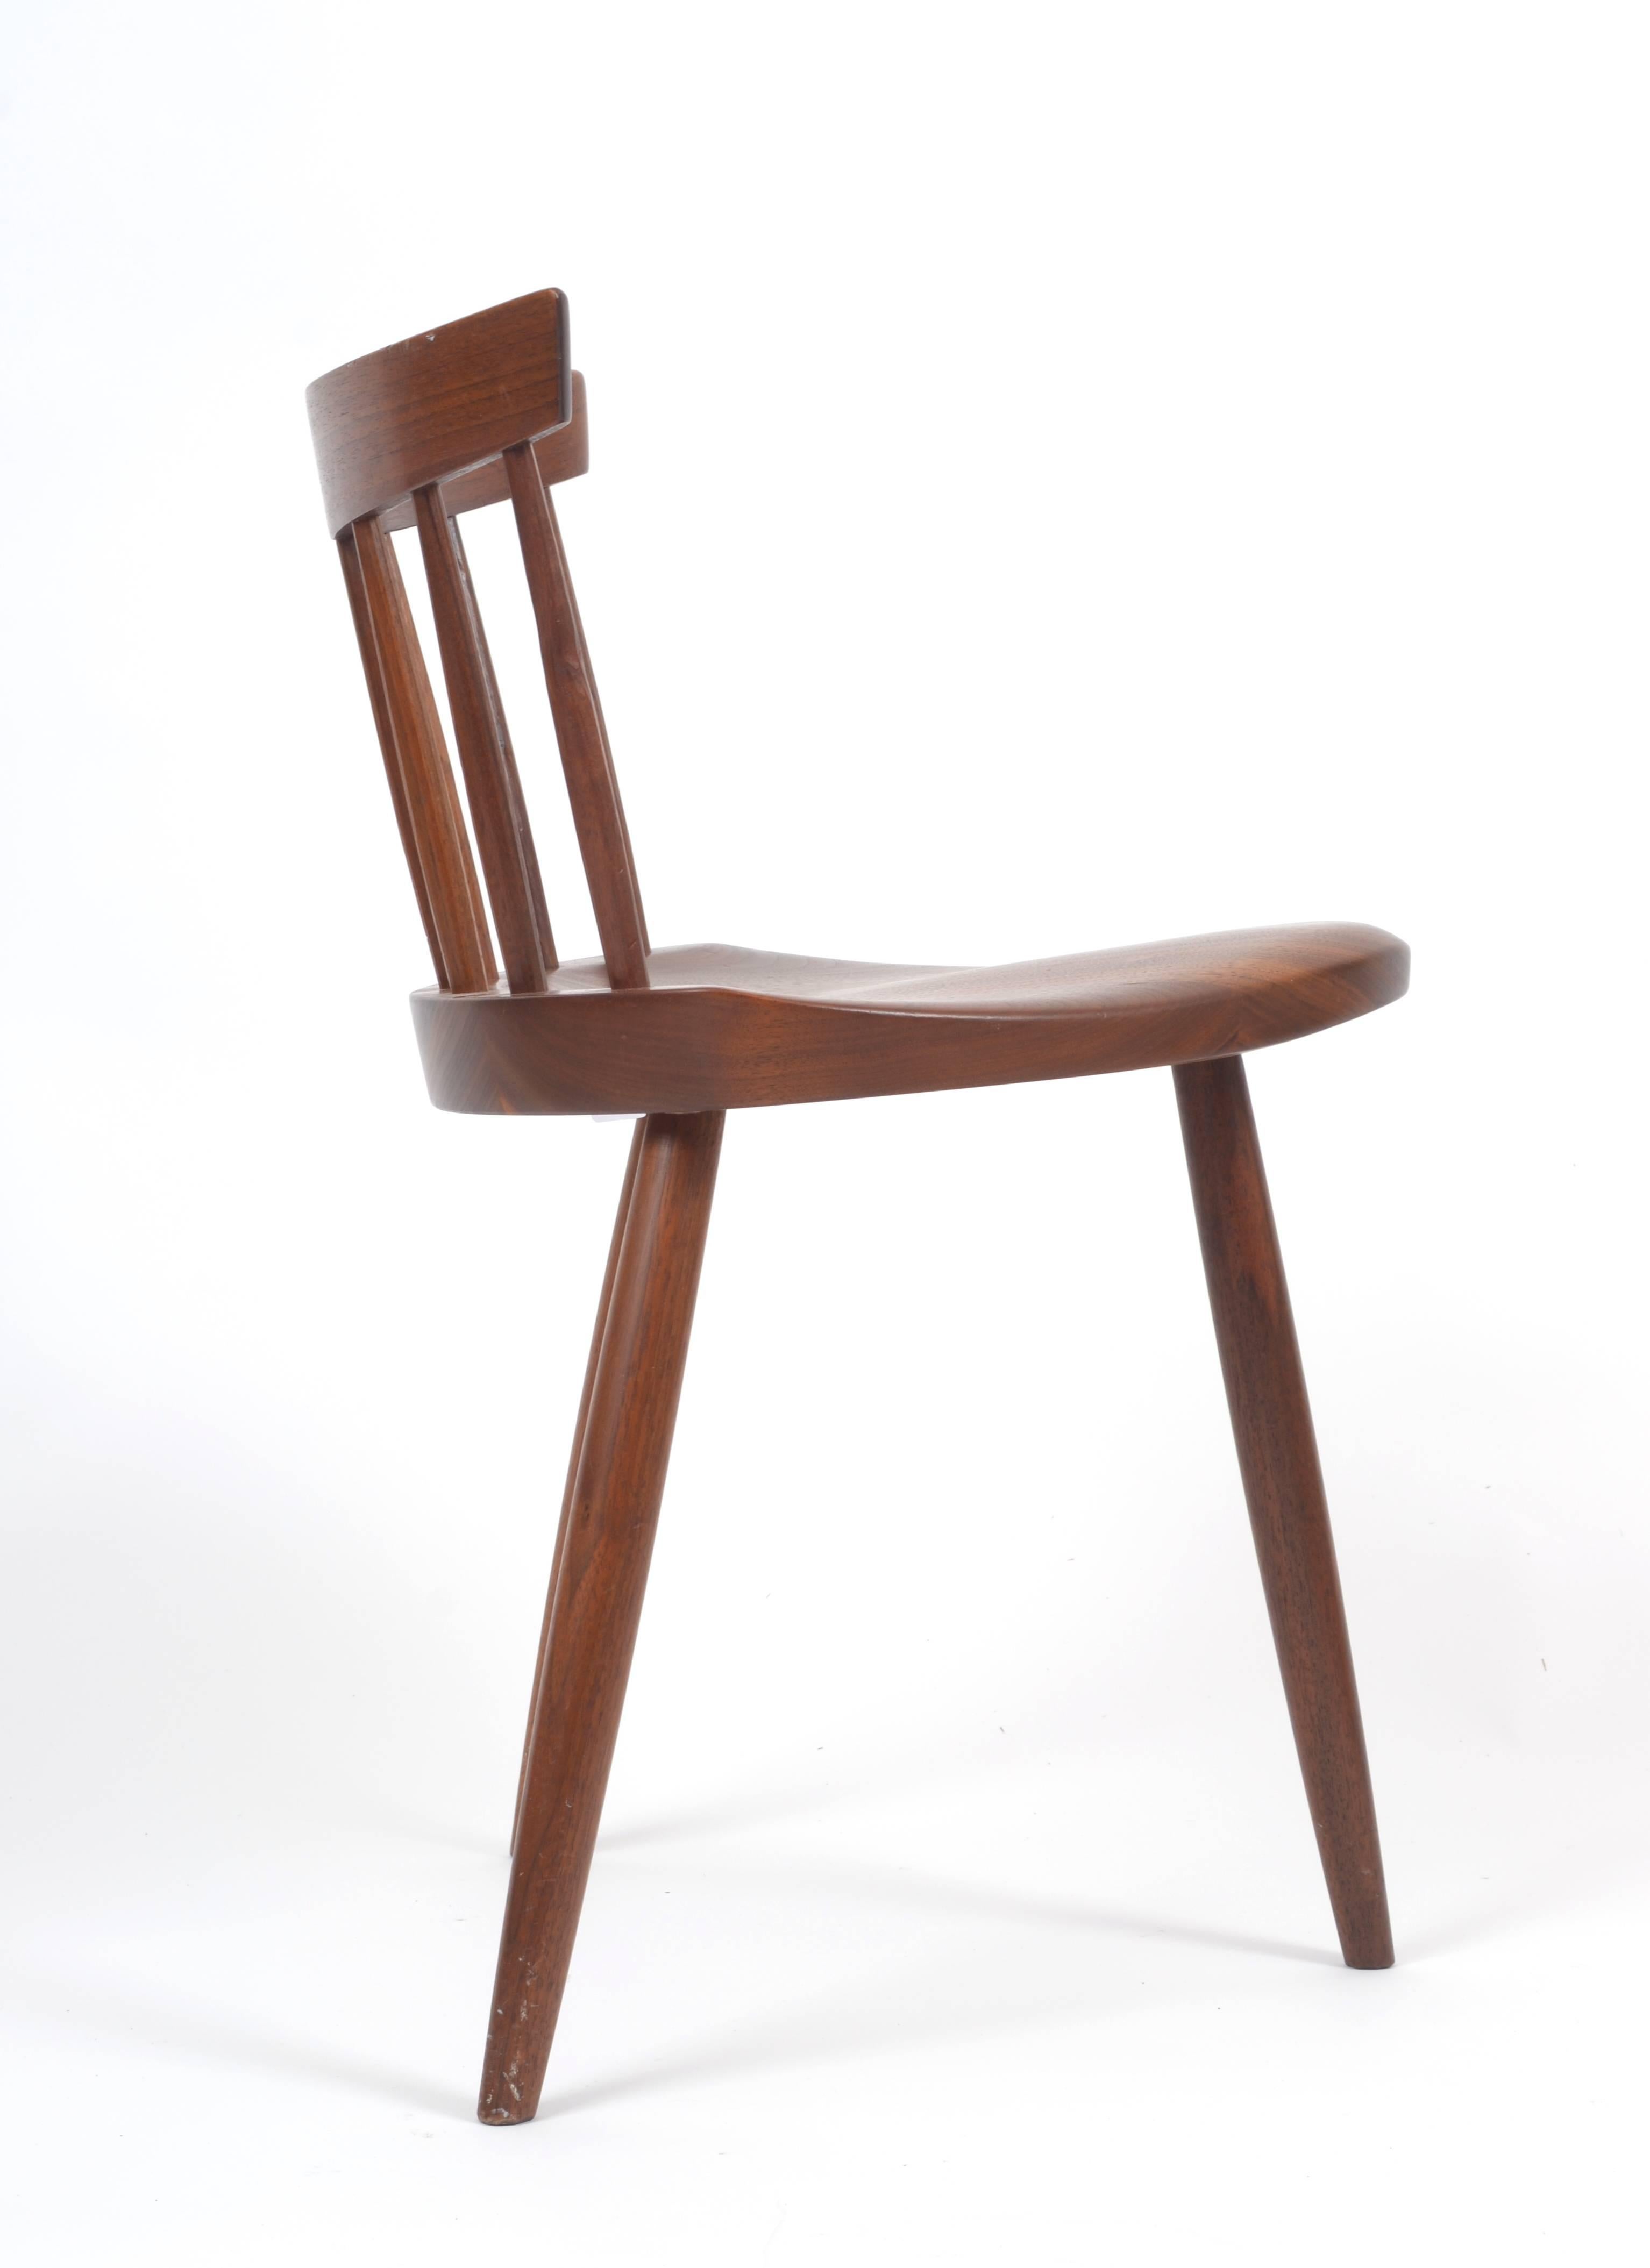 American George Nakashima Studio Mira Chairs